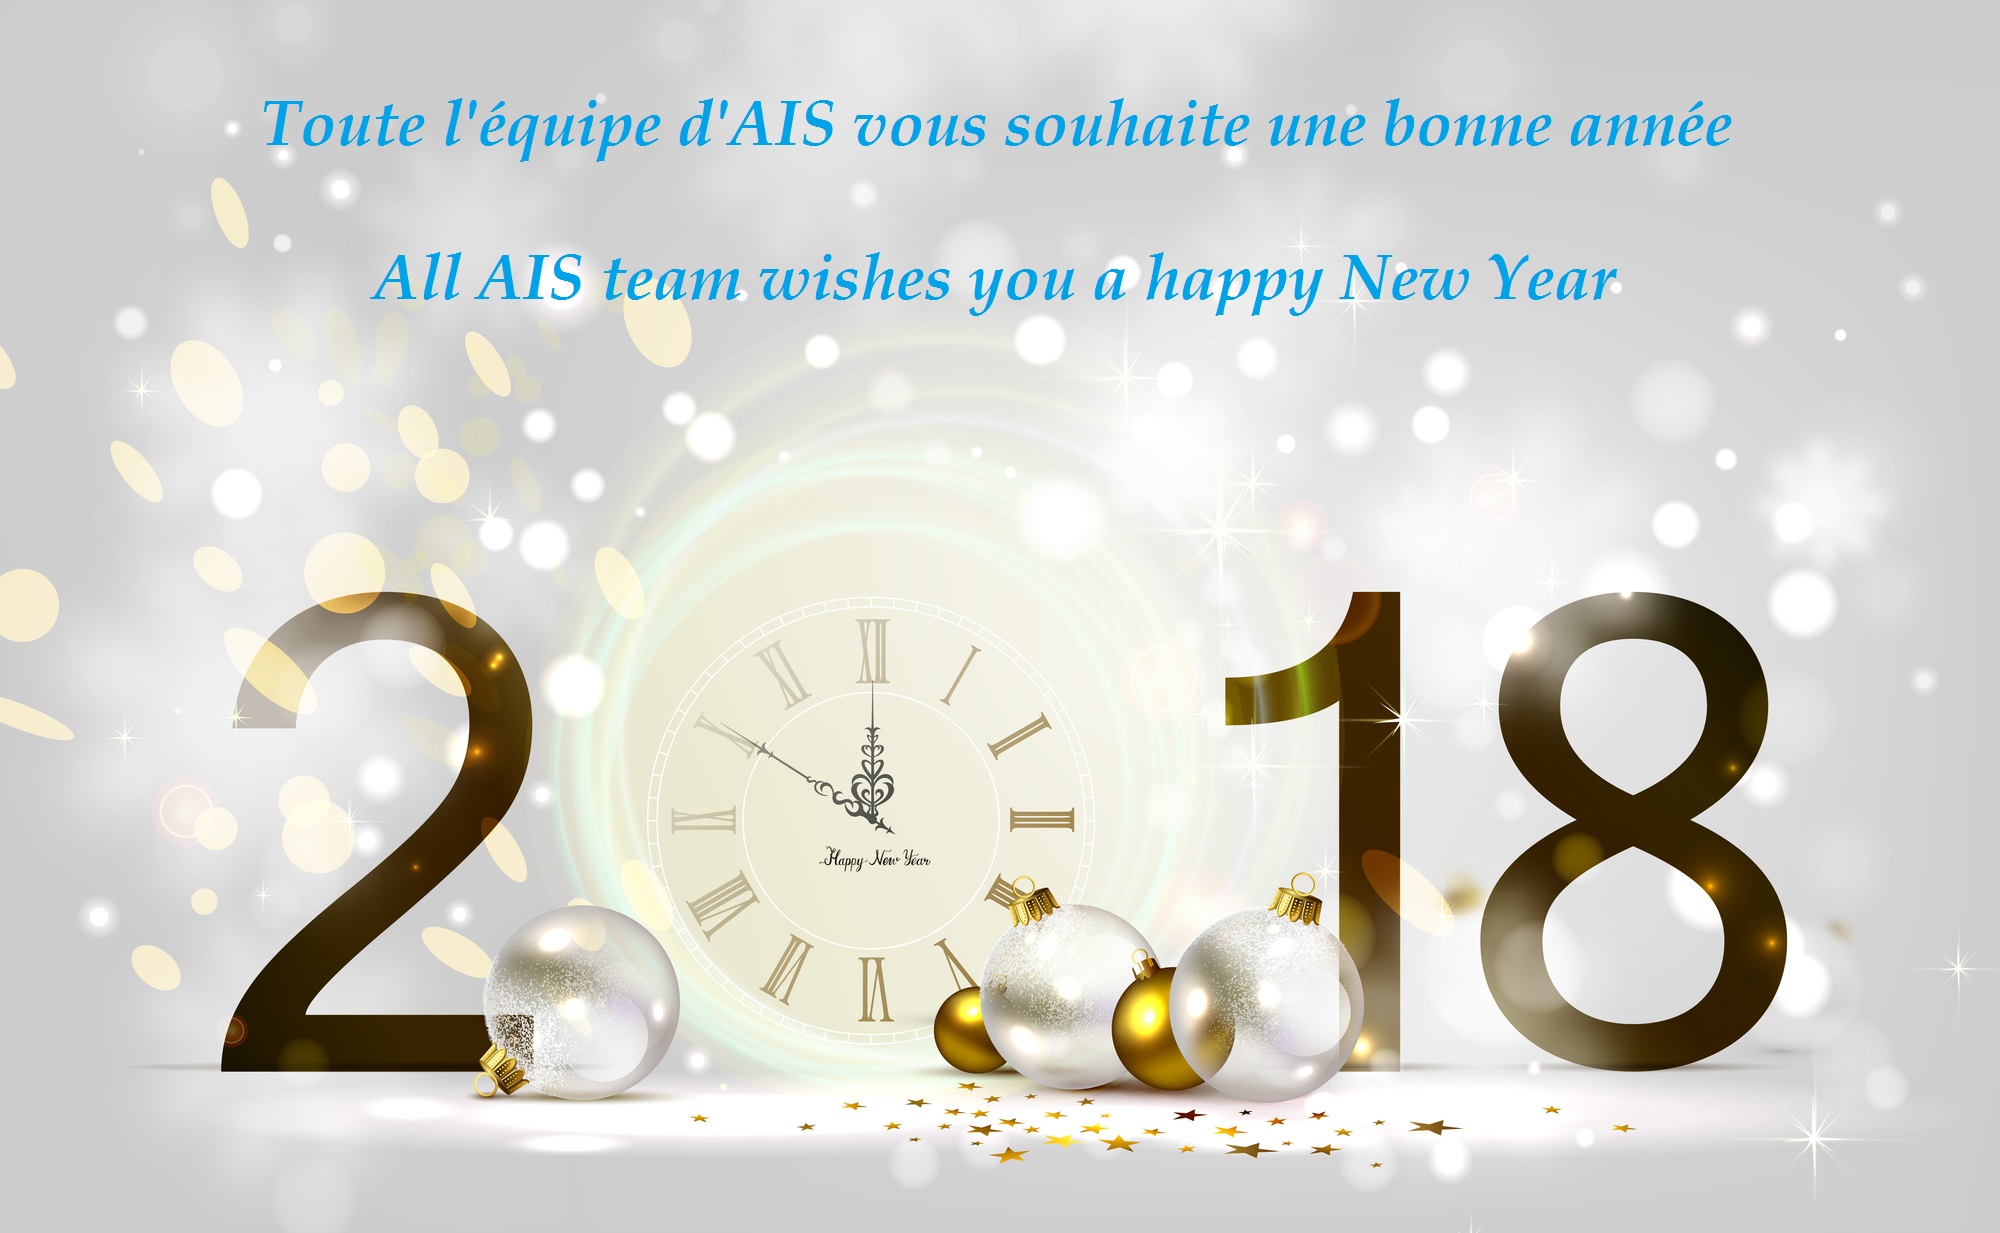 AIS wünscht ein frohes neues Jahr 2018 an alle seine Kunden und Partnern